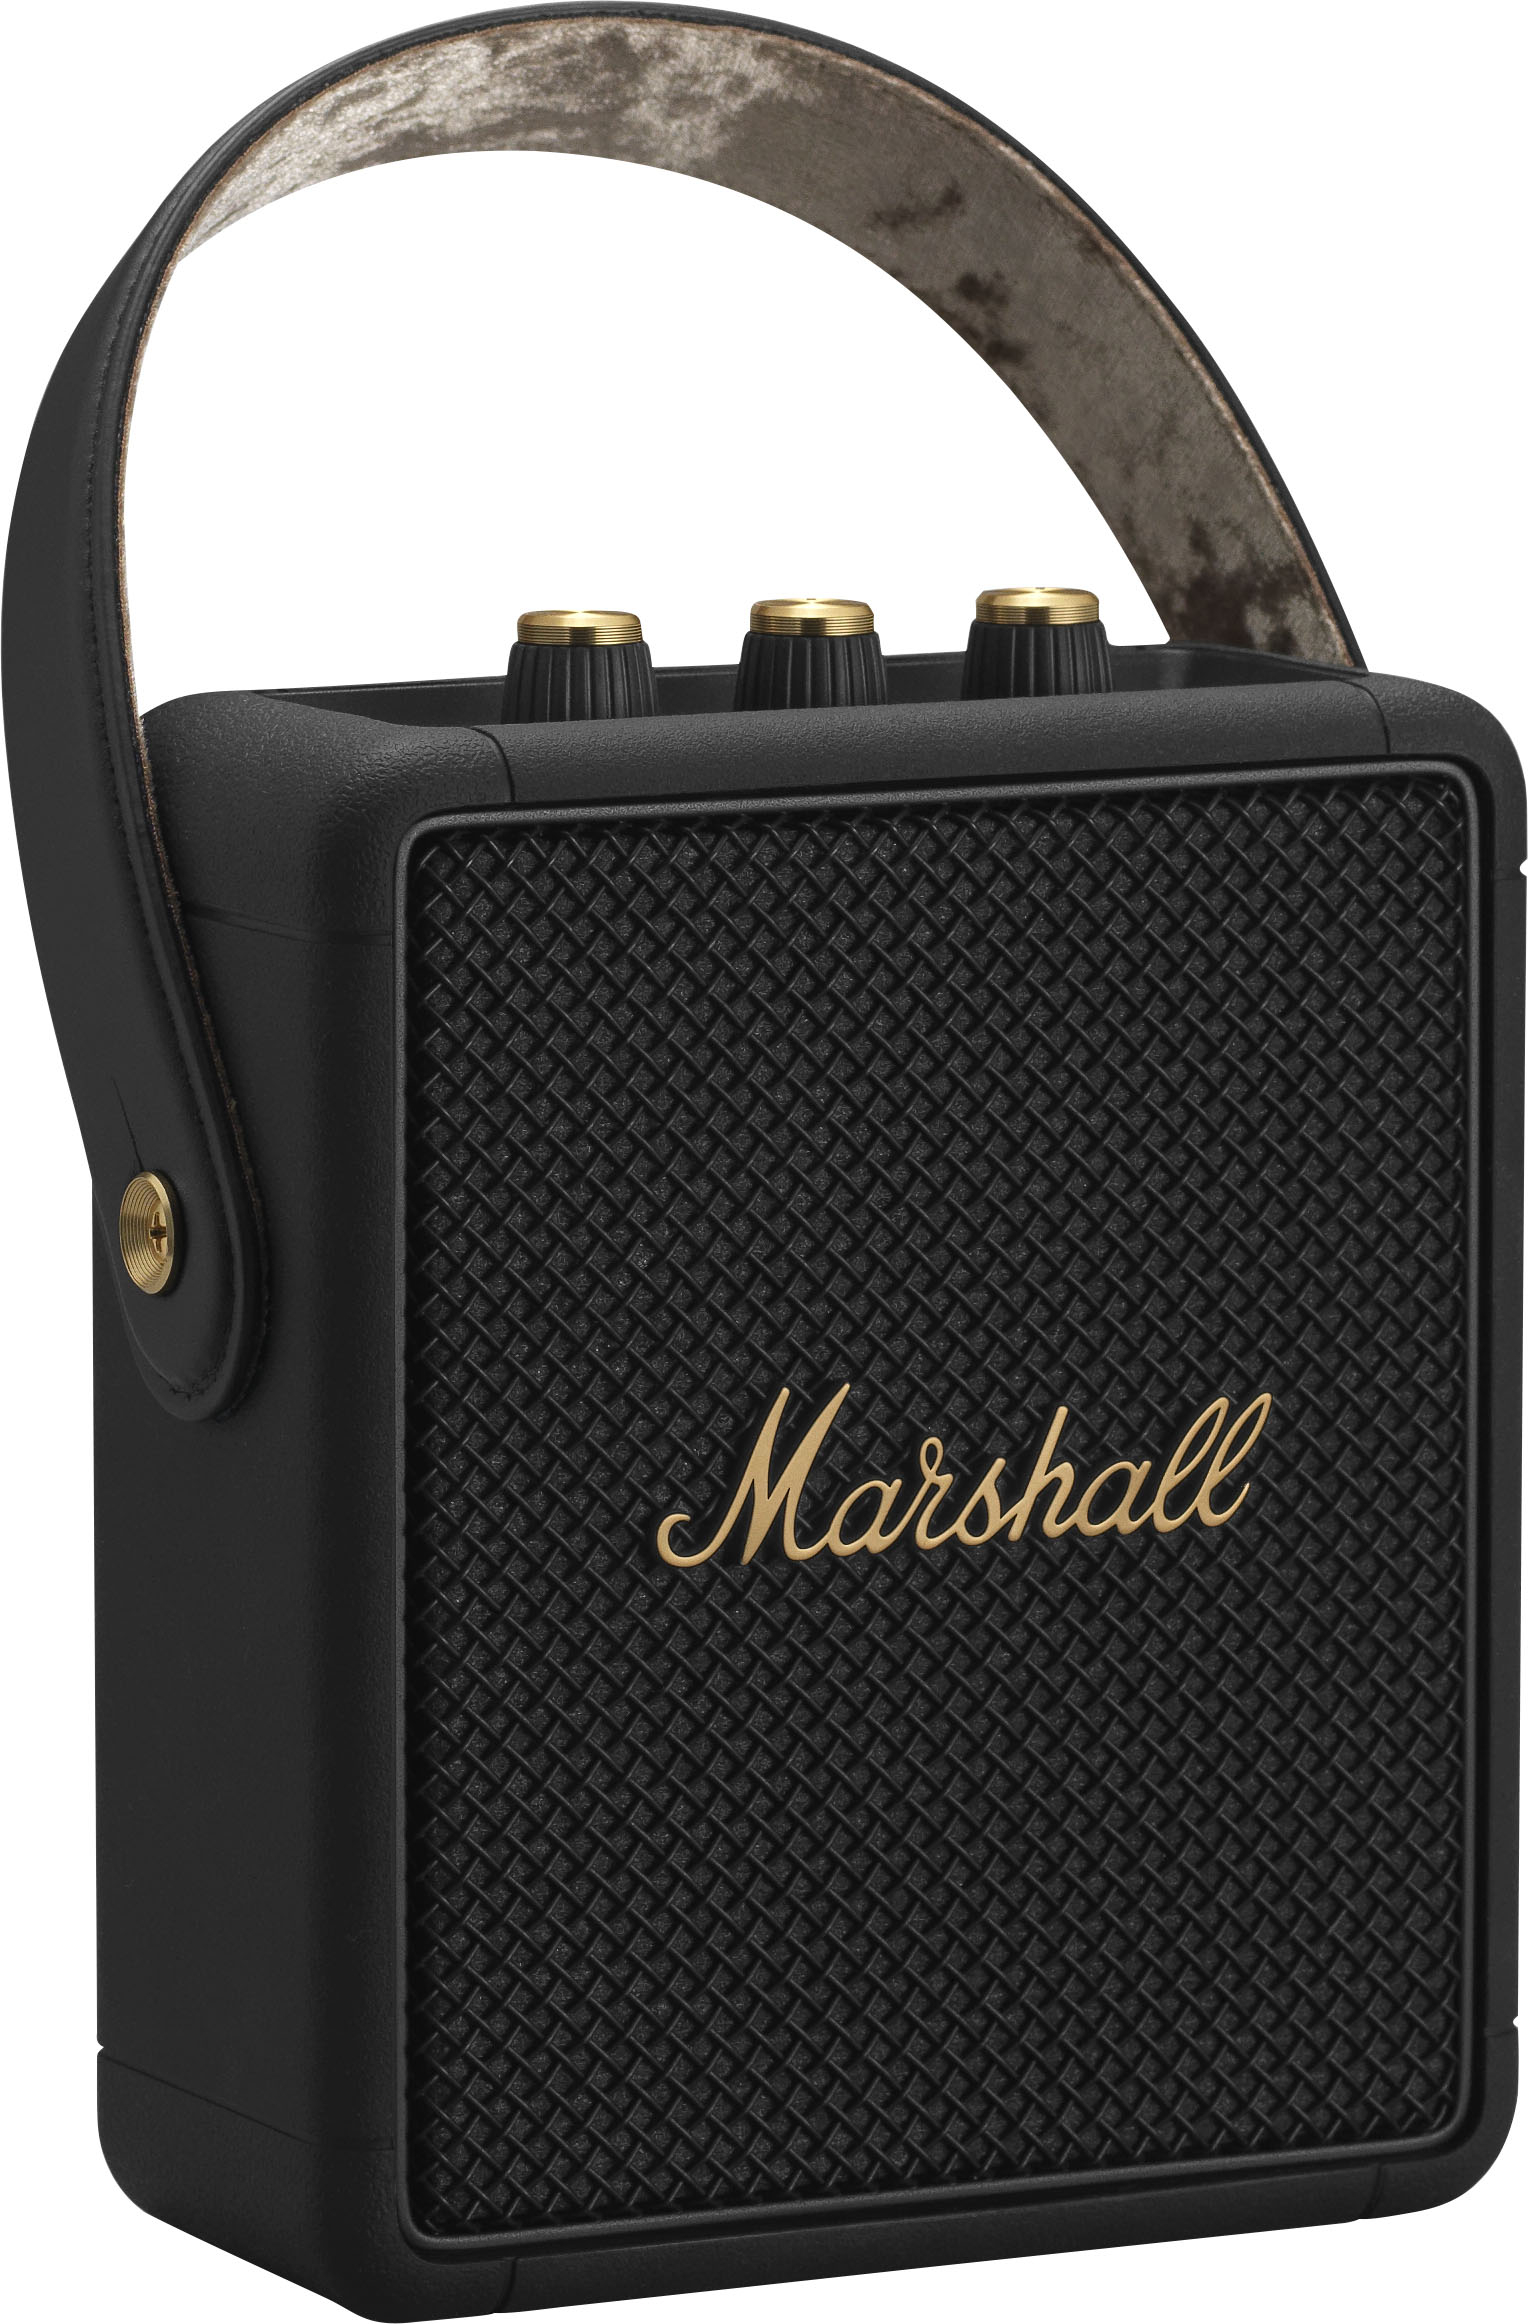 Marshall Speakers & Home Audio